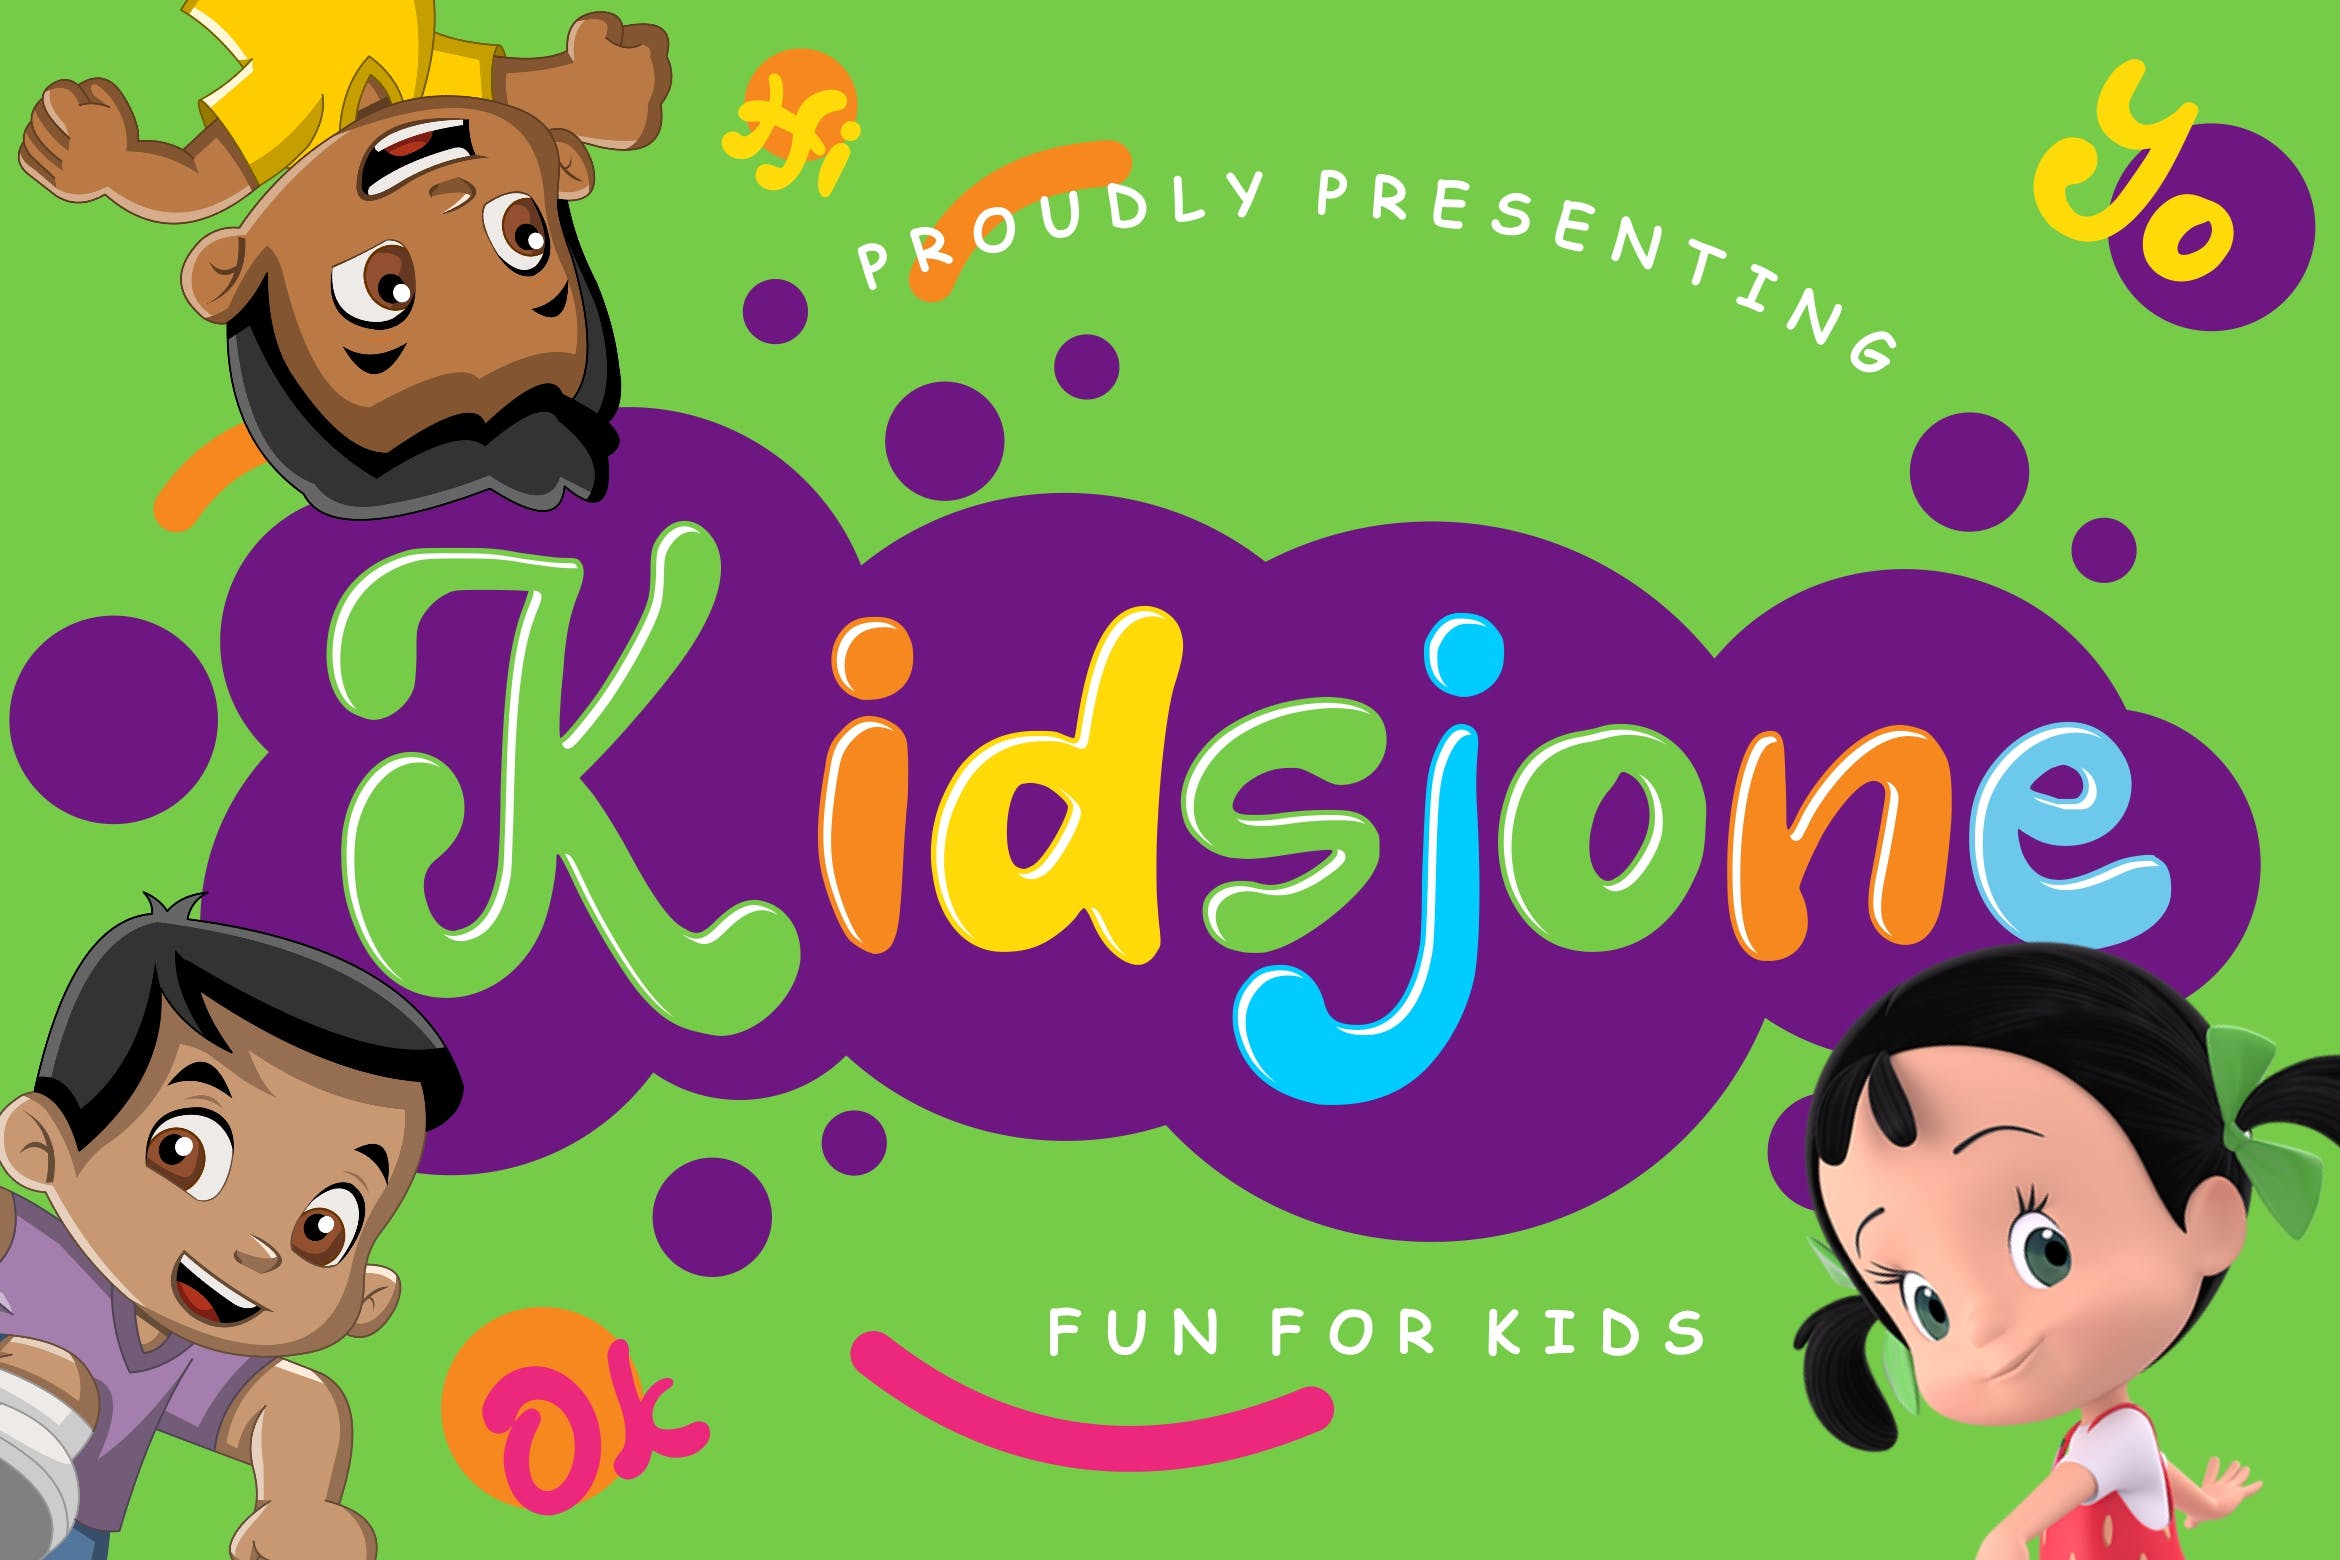 儿童可爱卡通风格印刷设计英文无衬线字体下载 Kidsjone Fun For Kids插图